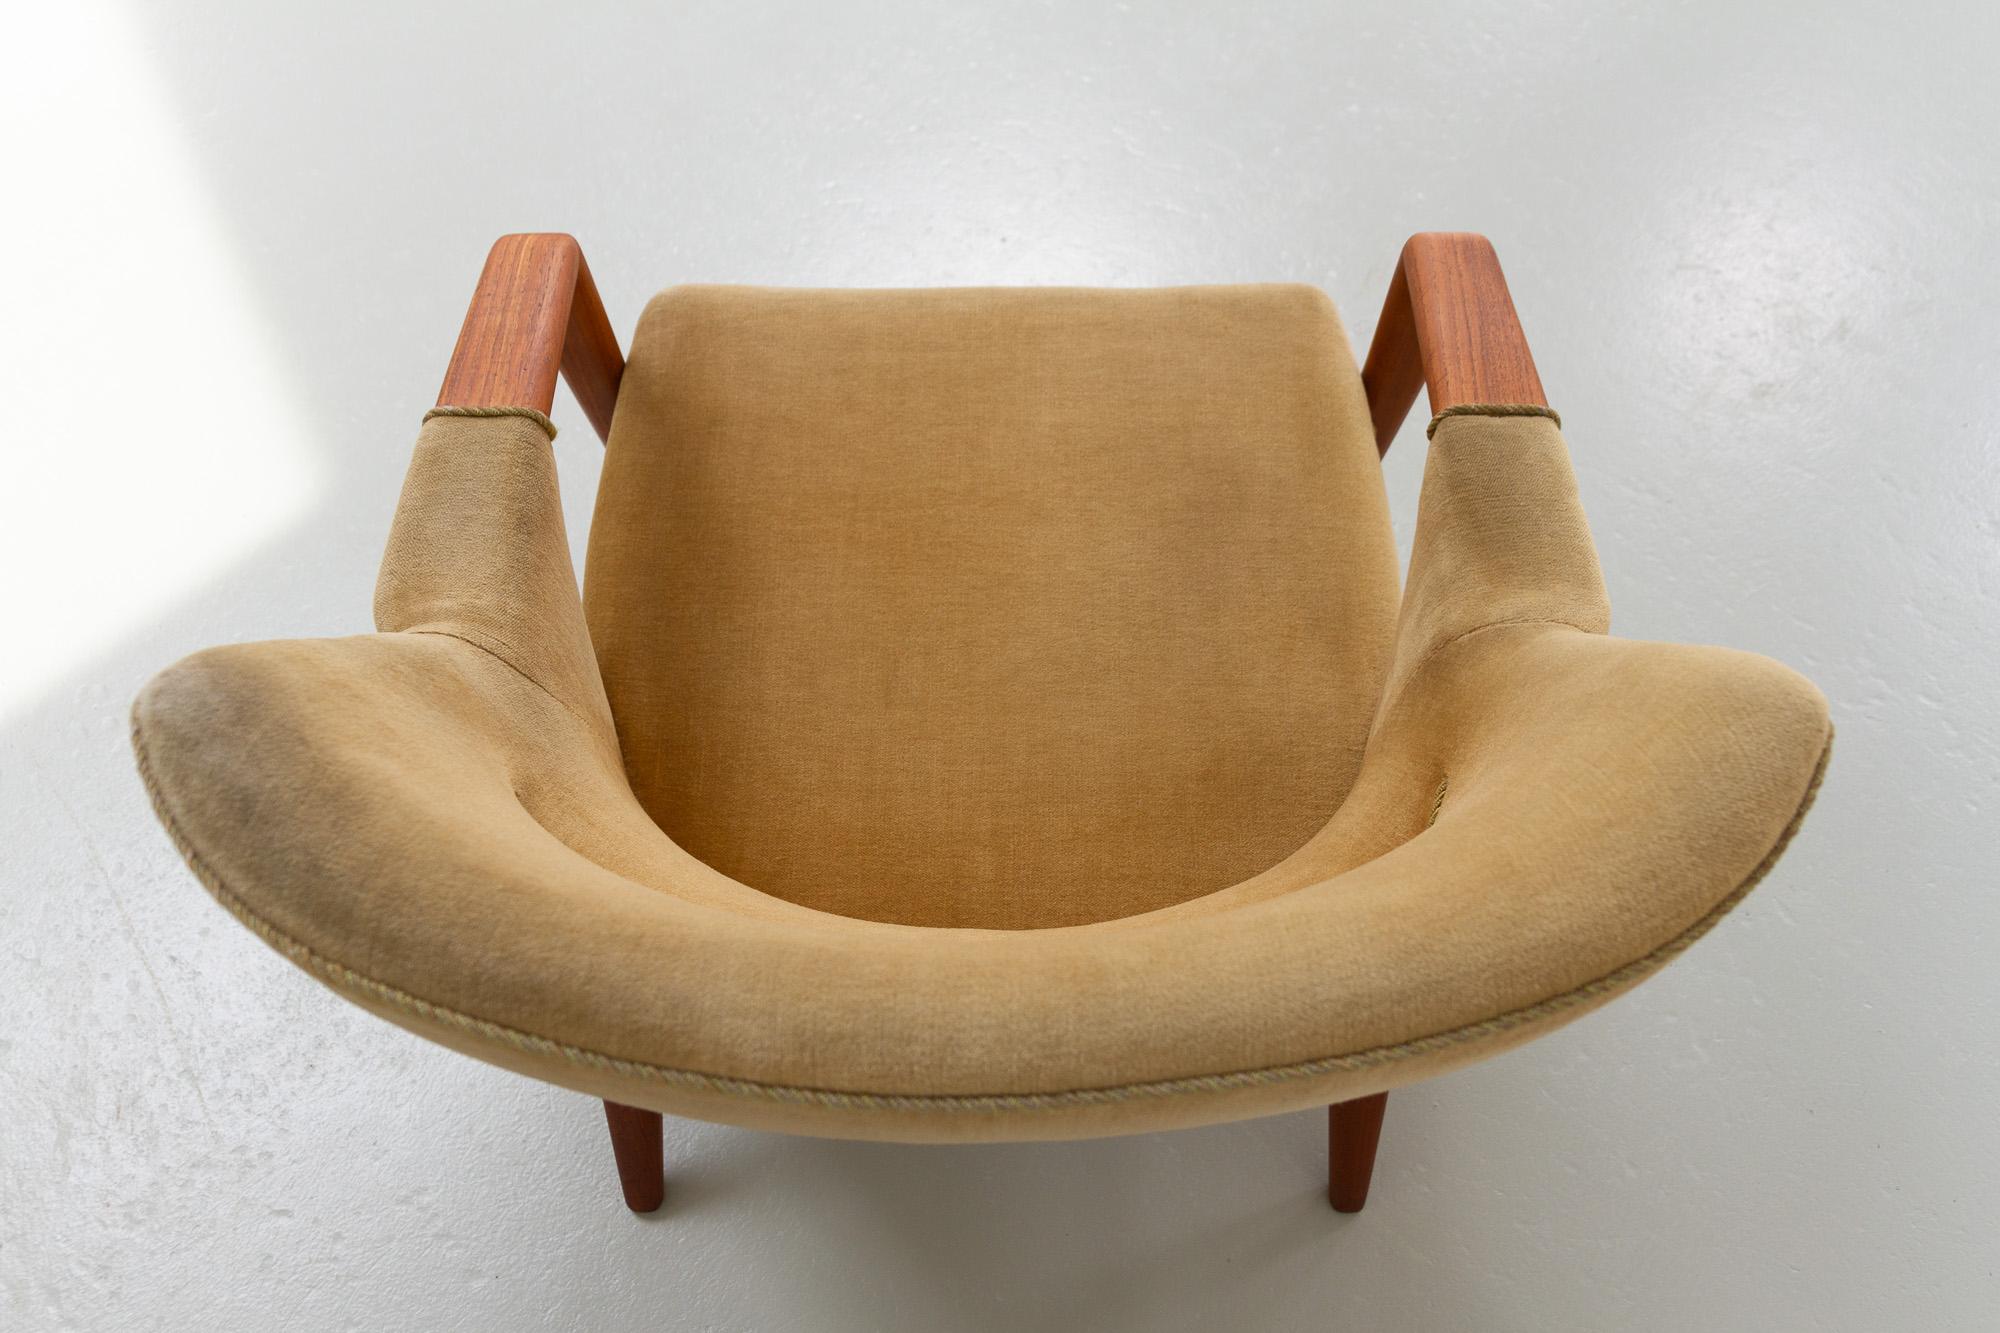 Danish Modern Banana Sofa and Chair by Kurt Olsen for Slagelse Møbelværk, 1950s For Sale 4